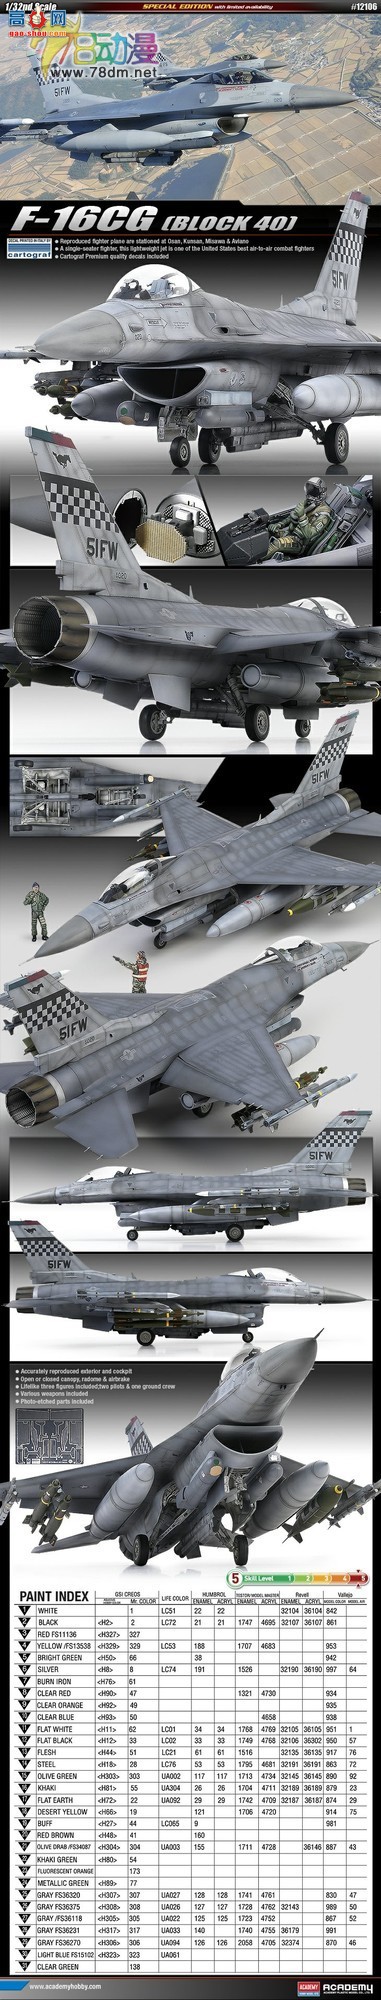  ACADEMY AM12106 F-16CG ս